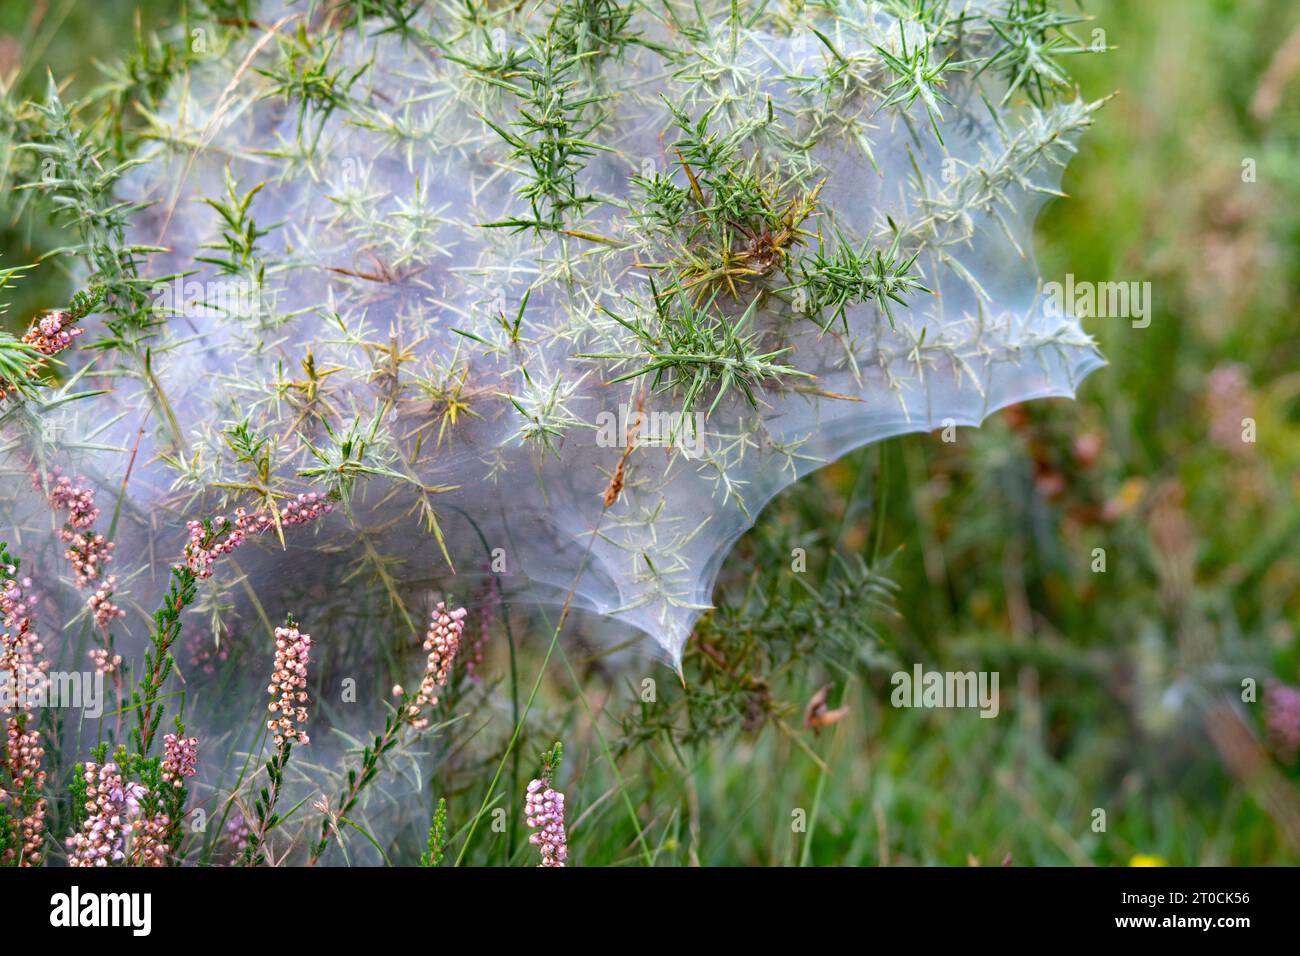 Gorse Spider Mite Colony Stock Photo